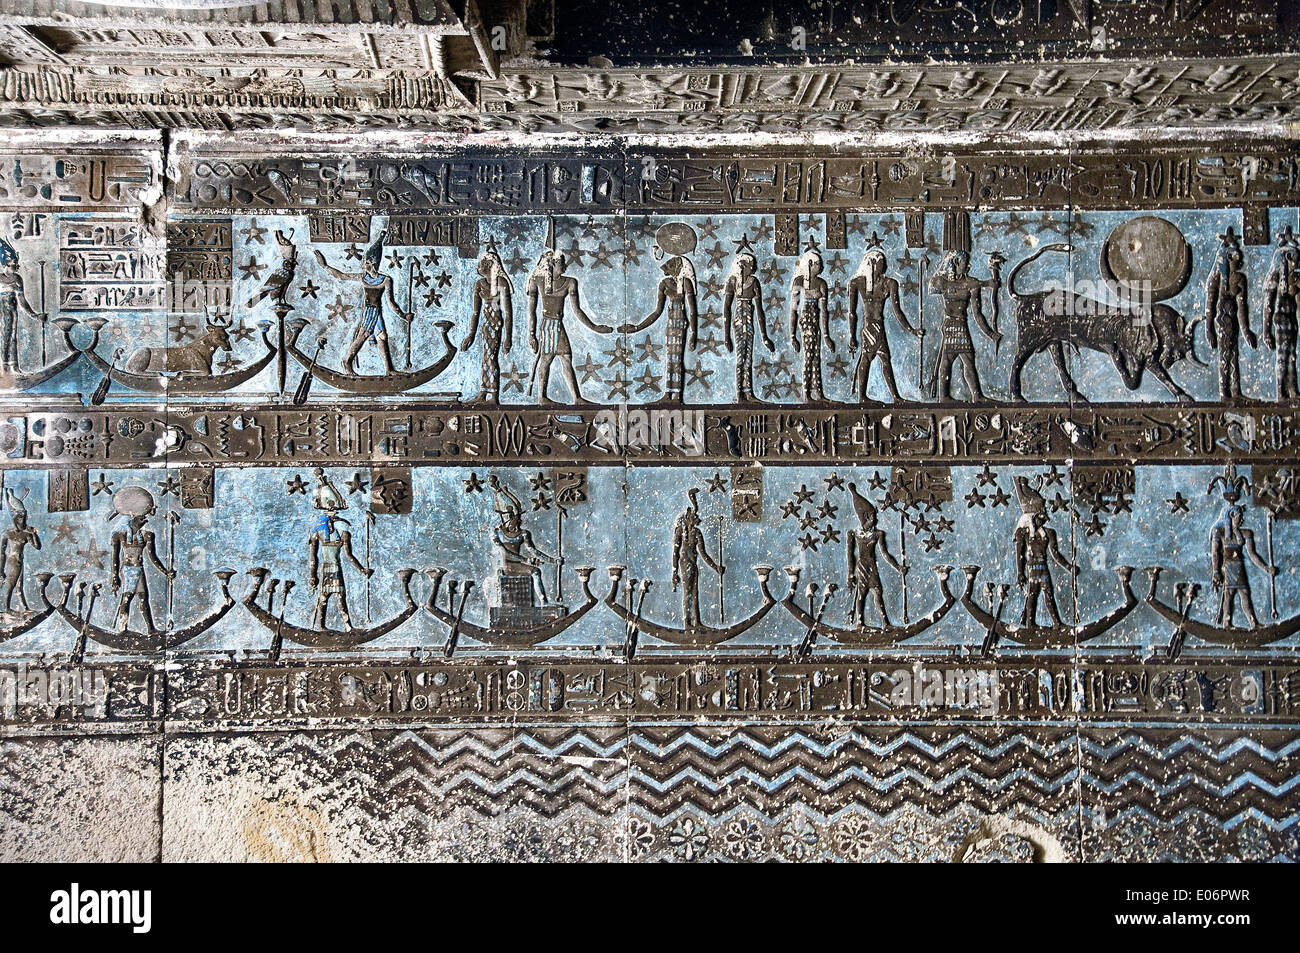 L'Egitto,Dendera,tempio tolemaico della dea Hathor.Vista del soffitto prima di effettuare la pulizia. Foto Stock